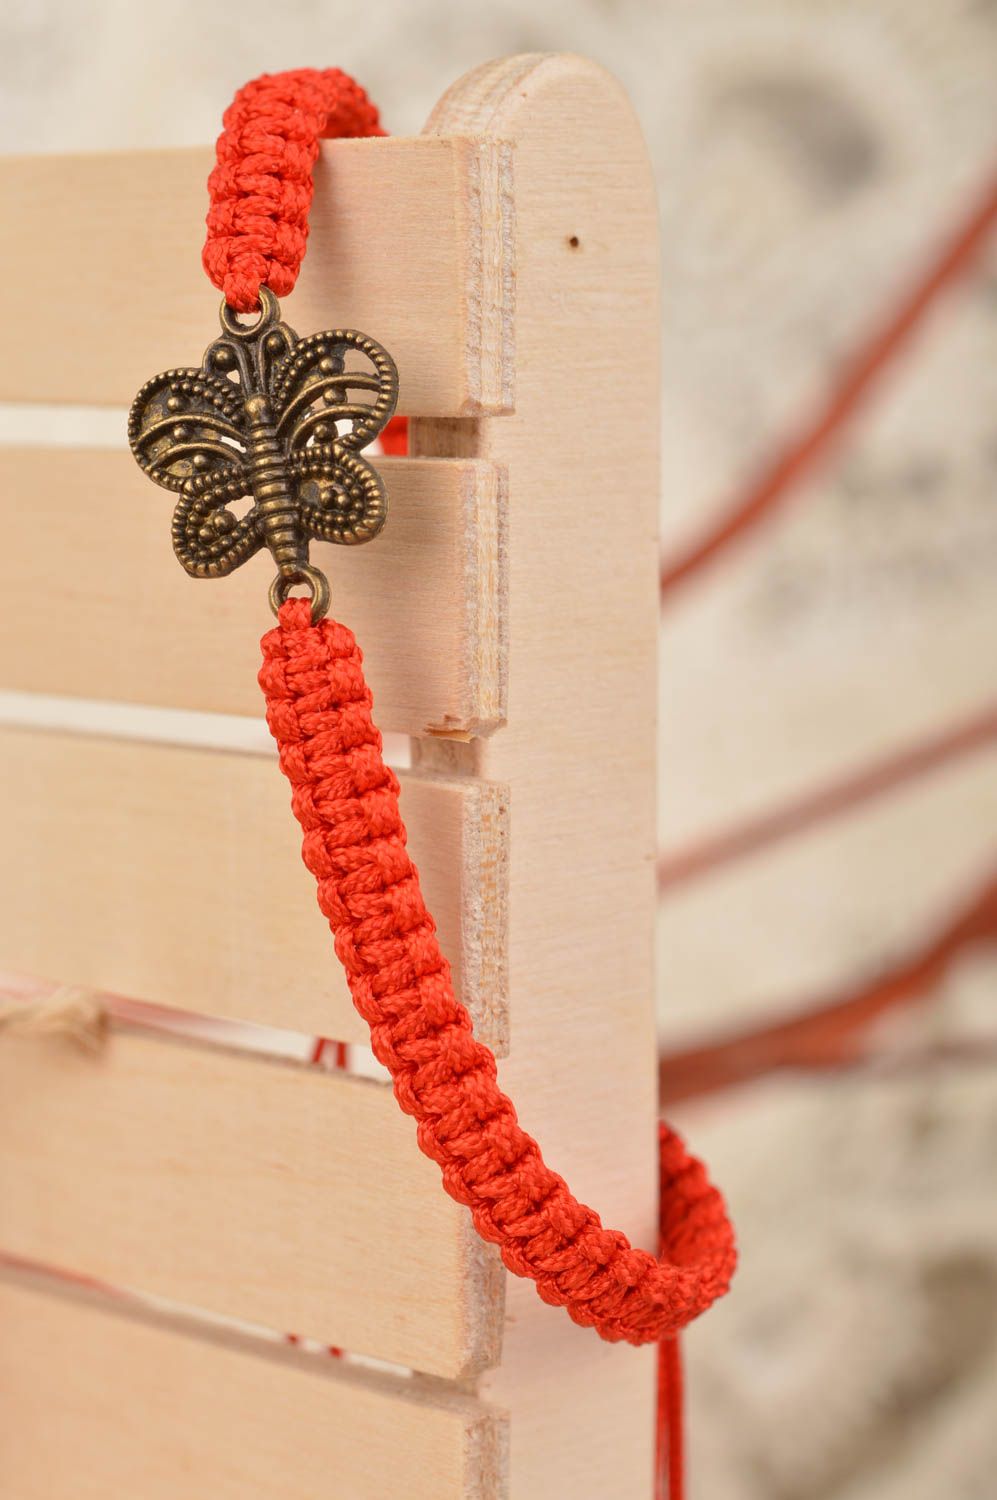 Тонкий плетеный браслет из ниток на руку красный с бабочкой ручной работы  фото 1